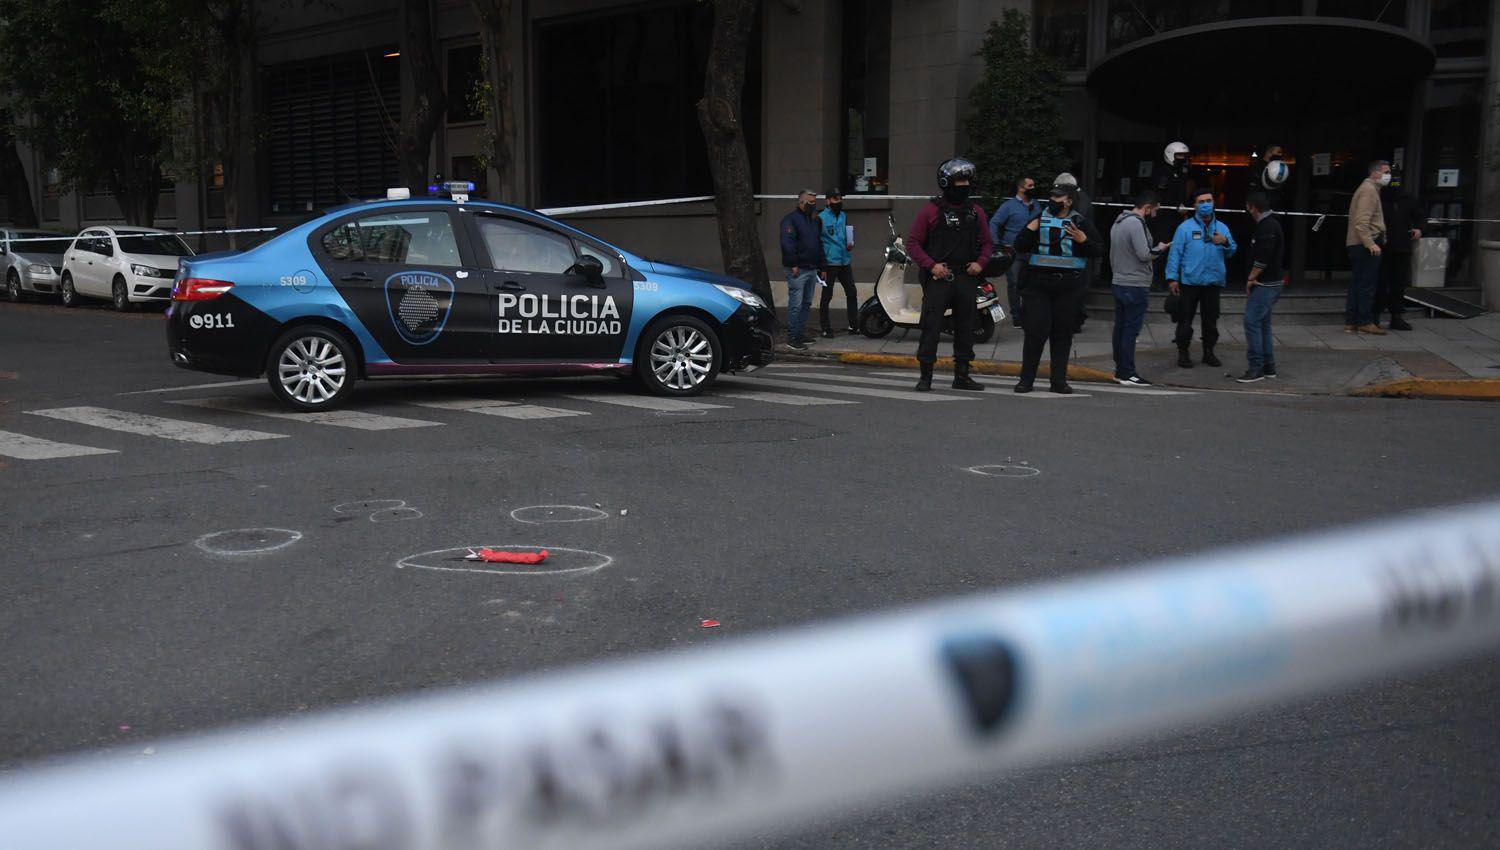 VIDEO  Escalofriante- Sujeto matoacute a puntildealadas a un policiacutea federal en pleno barrio de Palermo